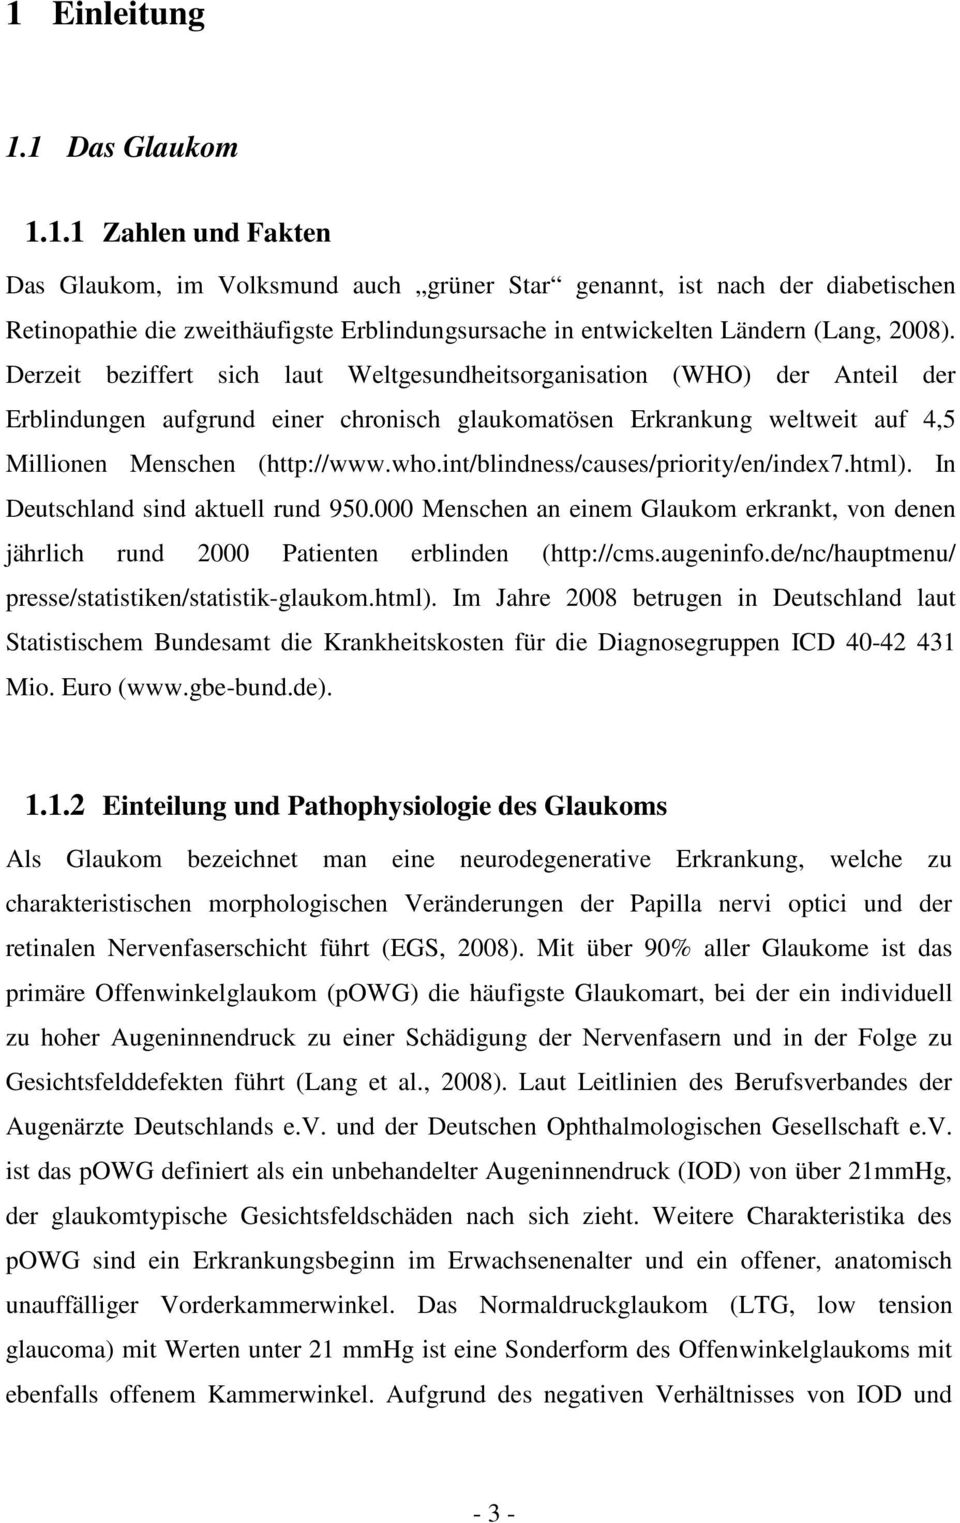 int/blindness/causes/priority/en/index7.html). In Deutschland sind aktuell rund 950.000 Menschen an einem Glaukom erkrankt, von denen jährlich rund 2000 Patienten erblinden (http://cms.augeninfo.